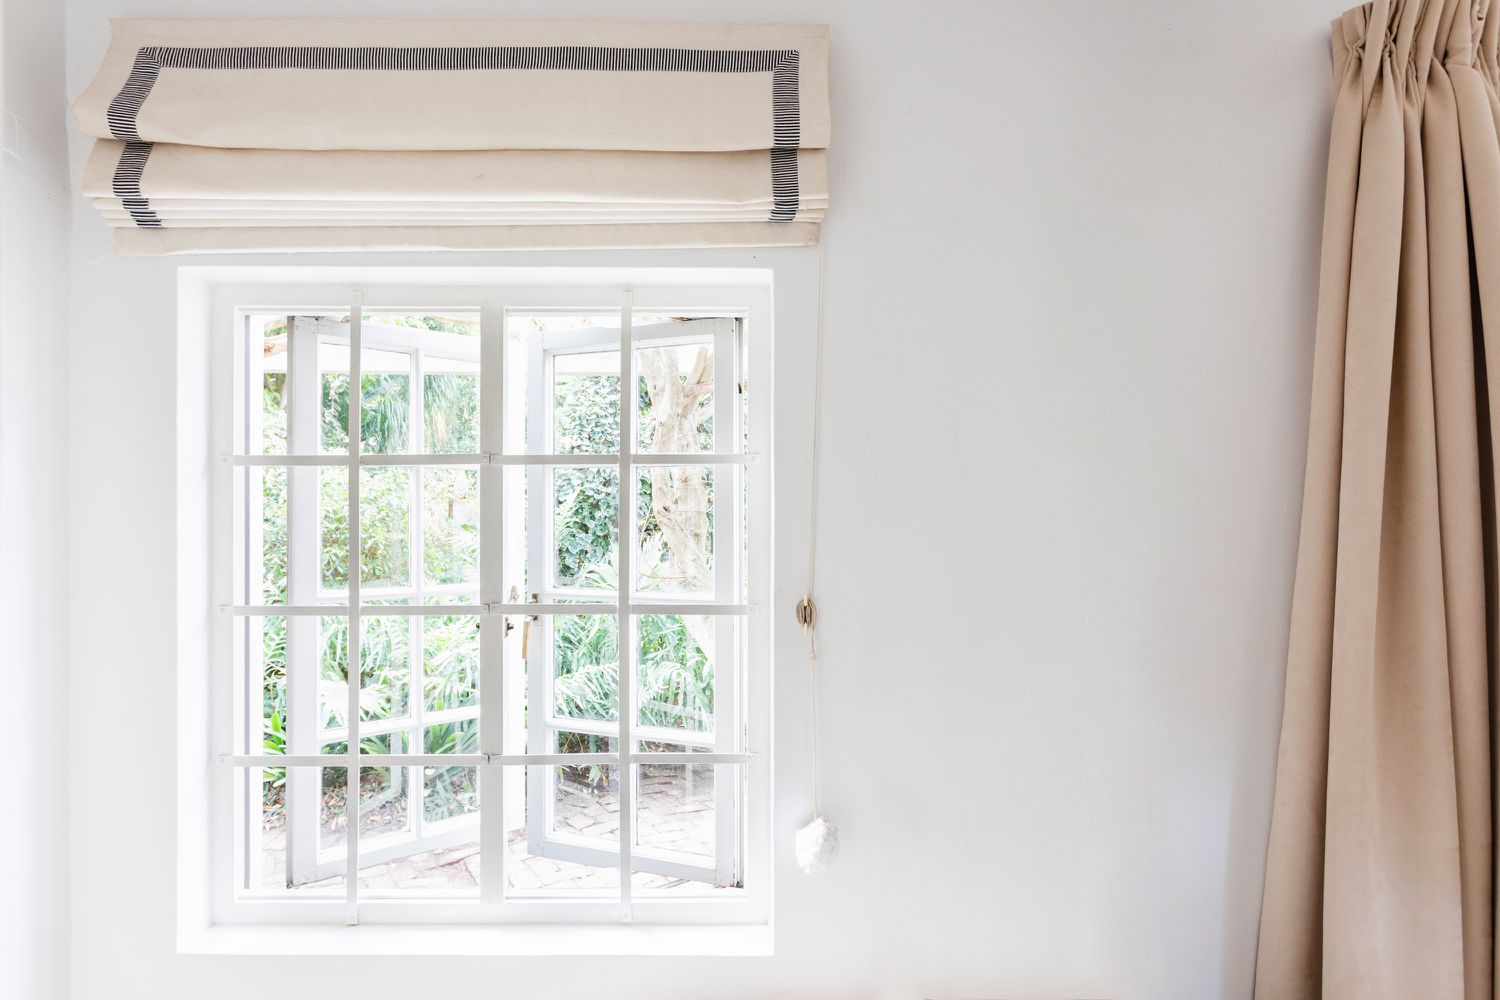 Fenster mit weißer Scheibe und gefalteten cremefarbenen und grauen Jalousien darüber und hellbrauner Gardine an der Seite